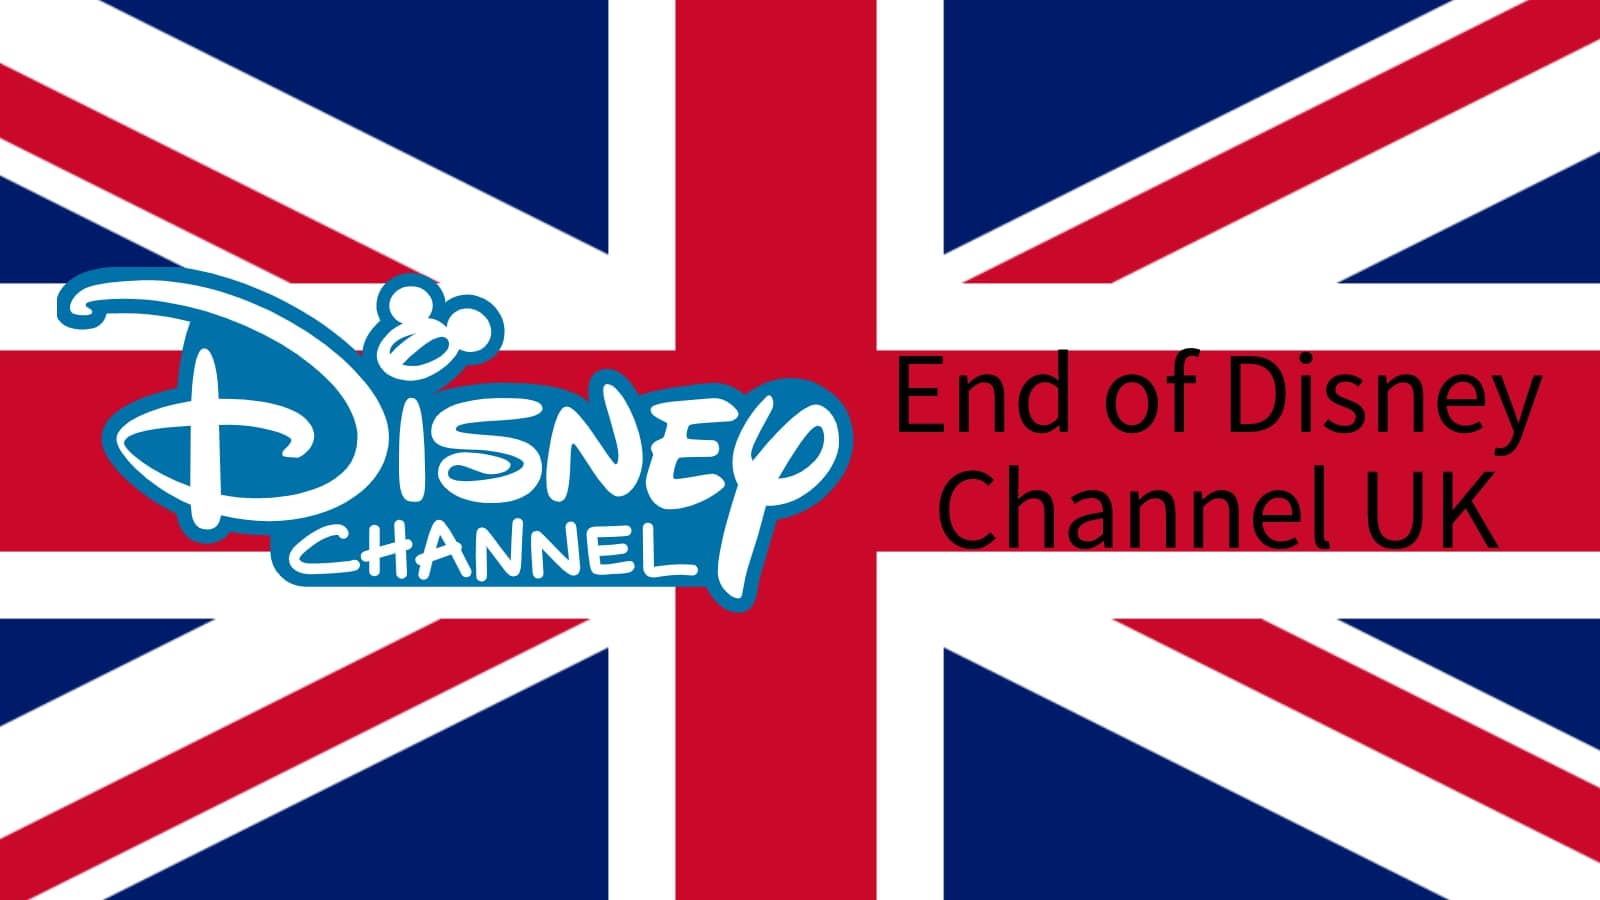 End of Disney Channel UK (October 1, 2020)